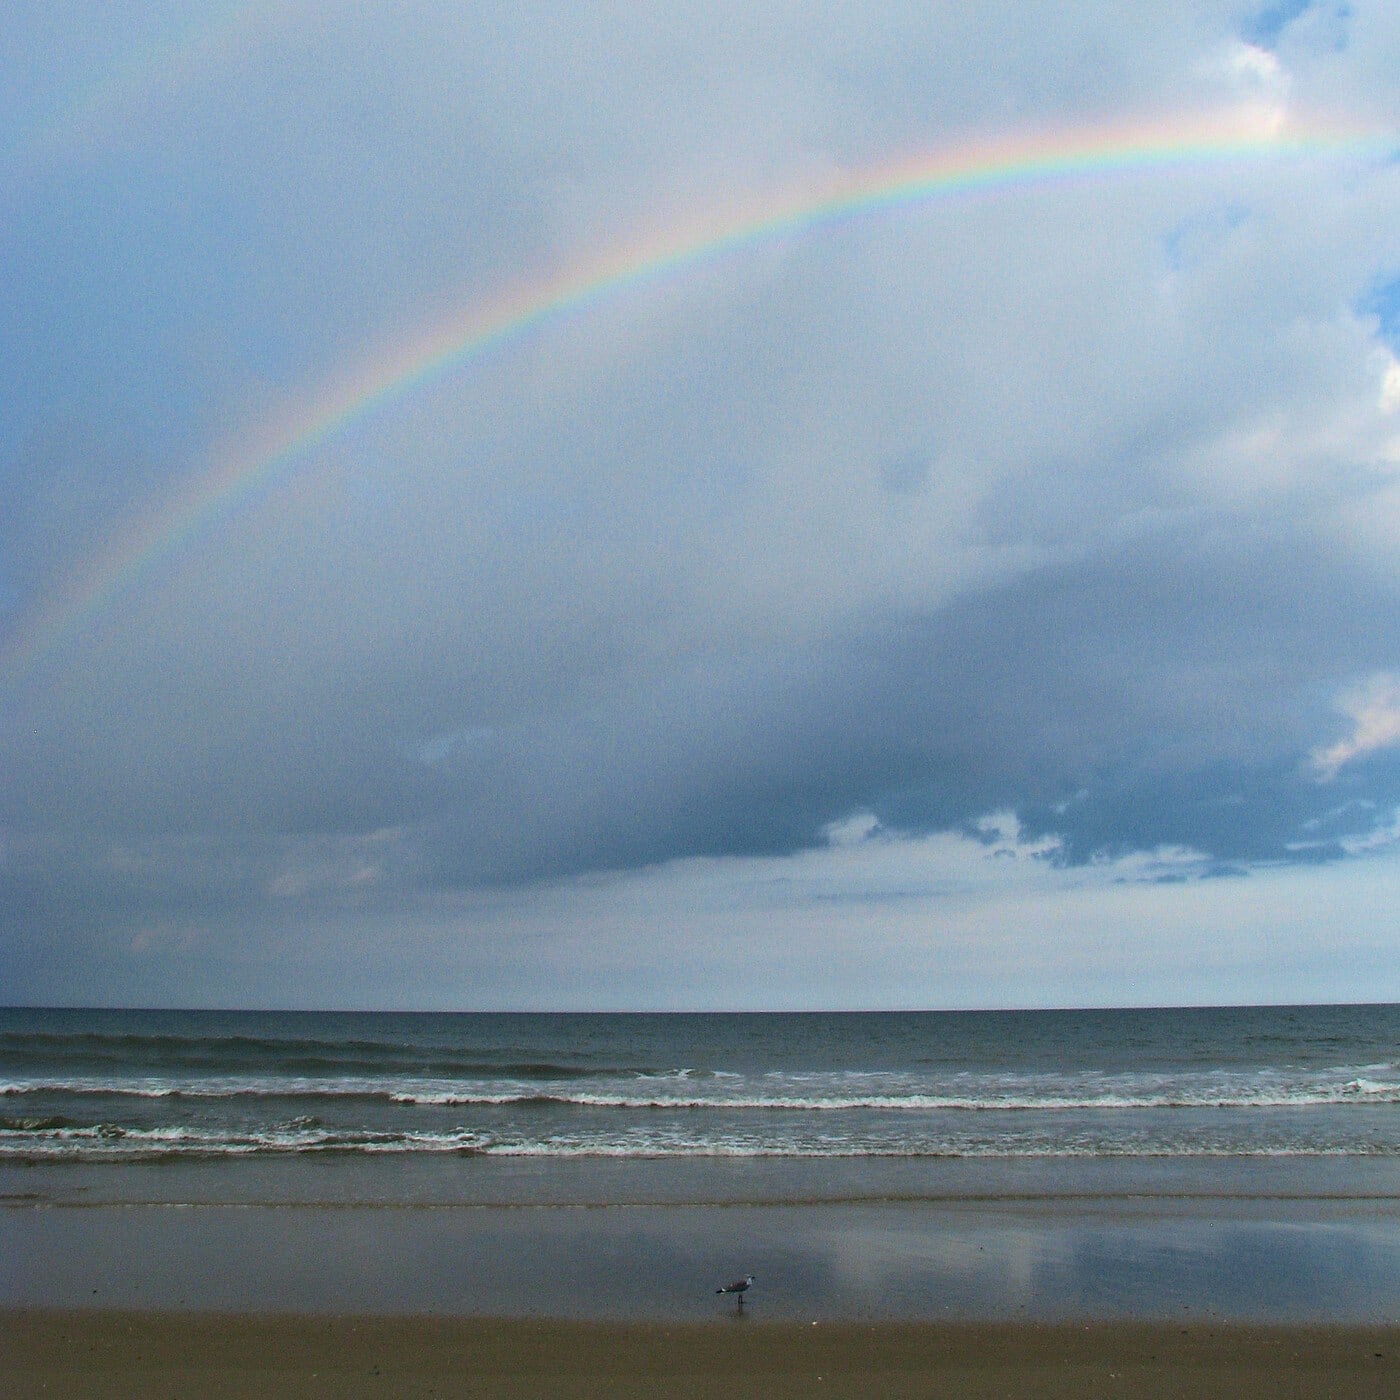 BlogPi, a Rainbow and a Nudist Beach